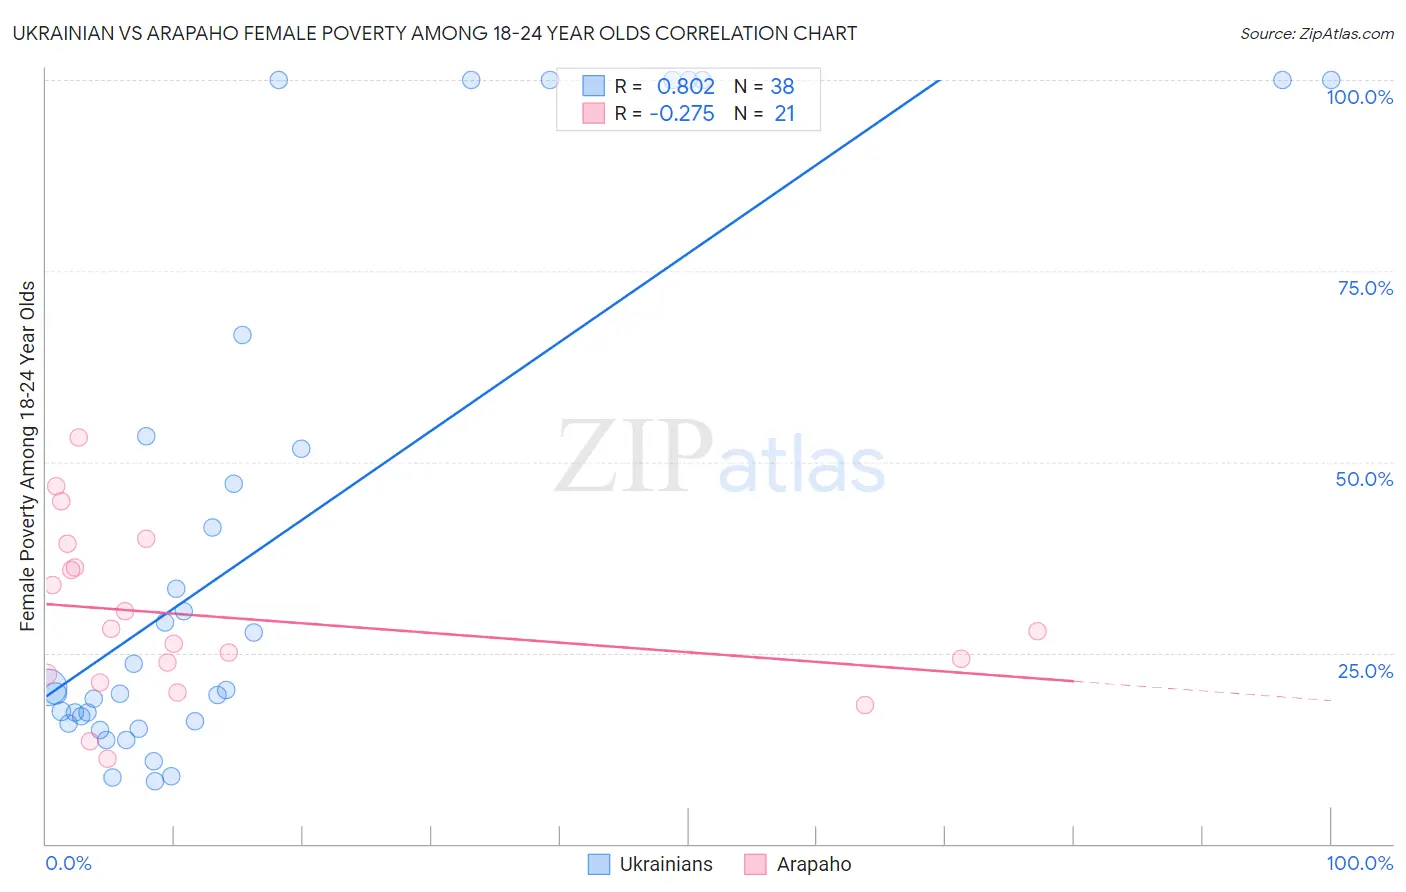 Ukrainian vs Arapaho Female Poverty Among 18-24 Year Olds